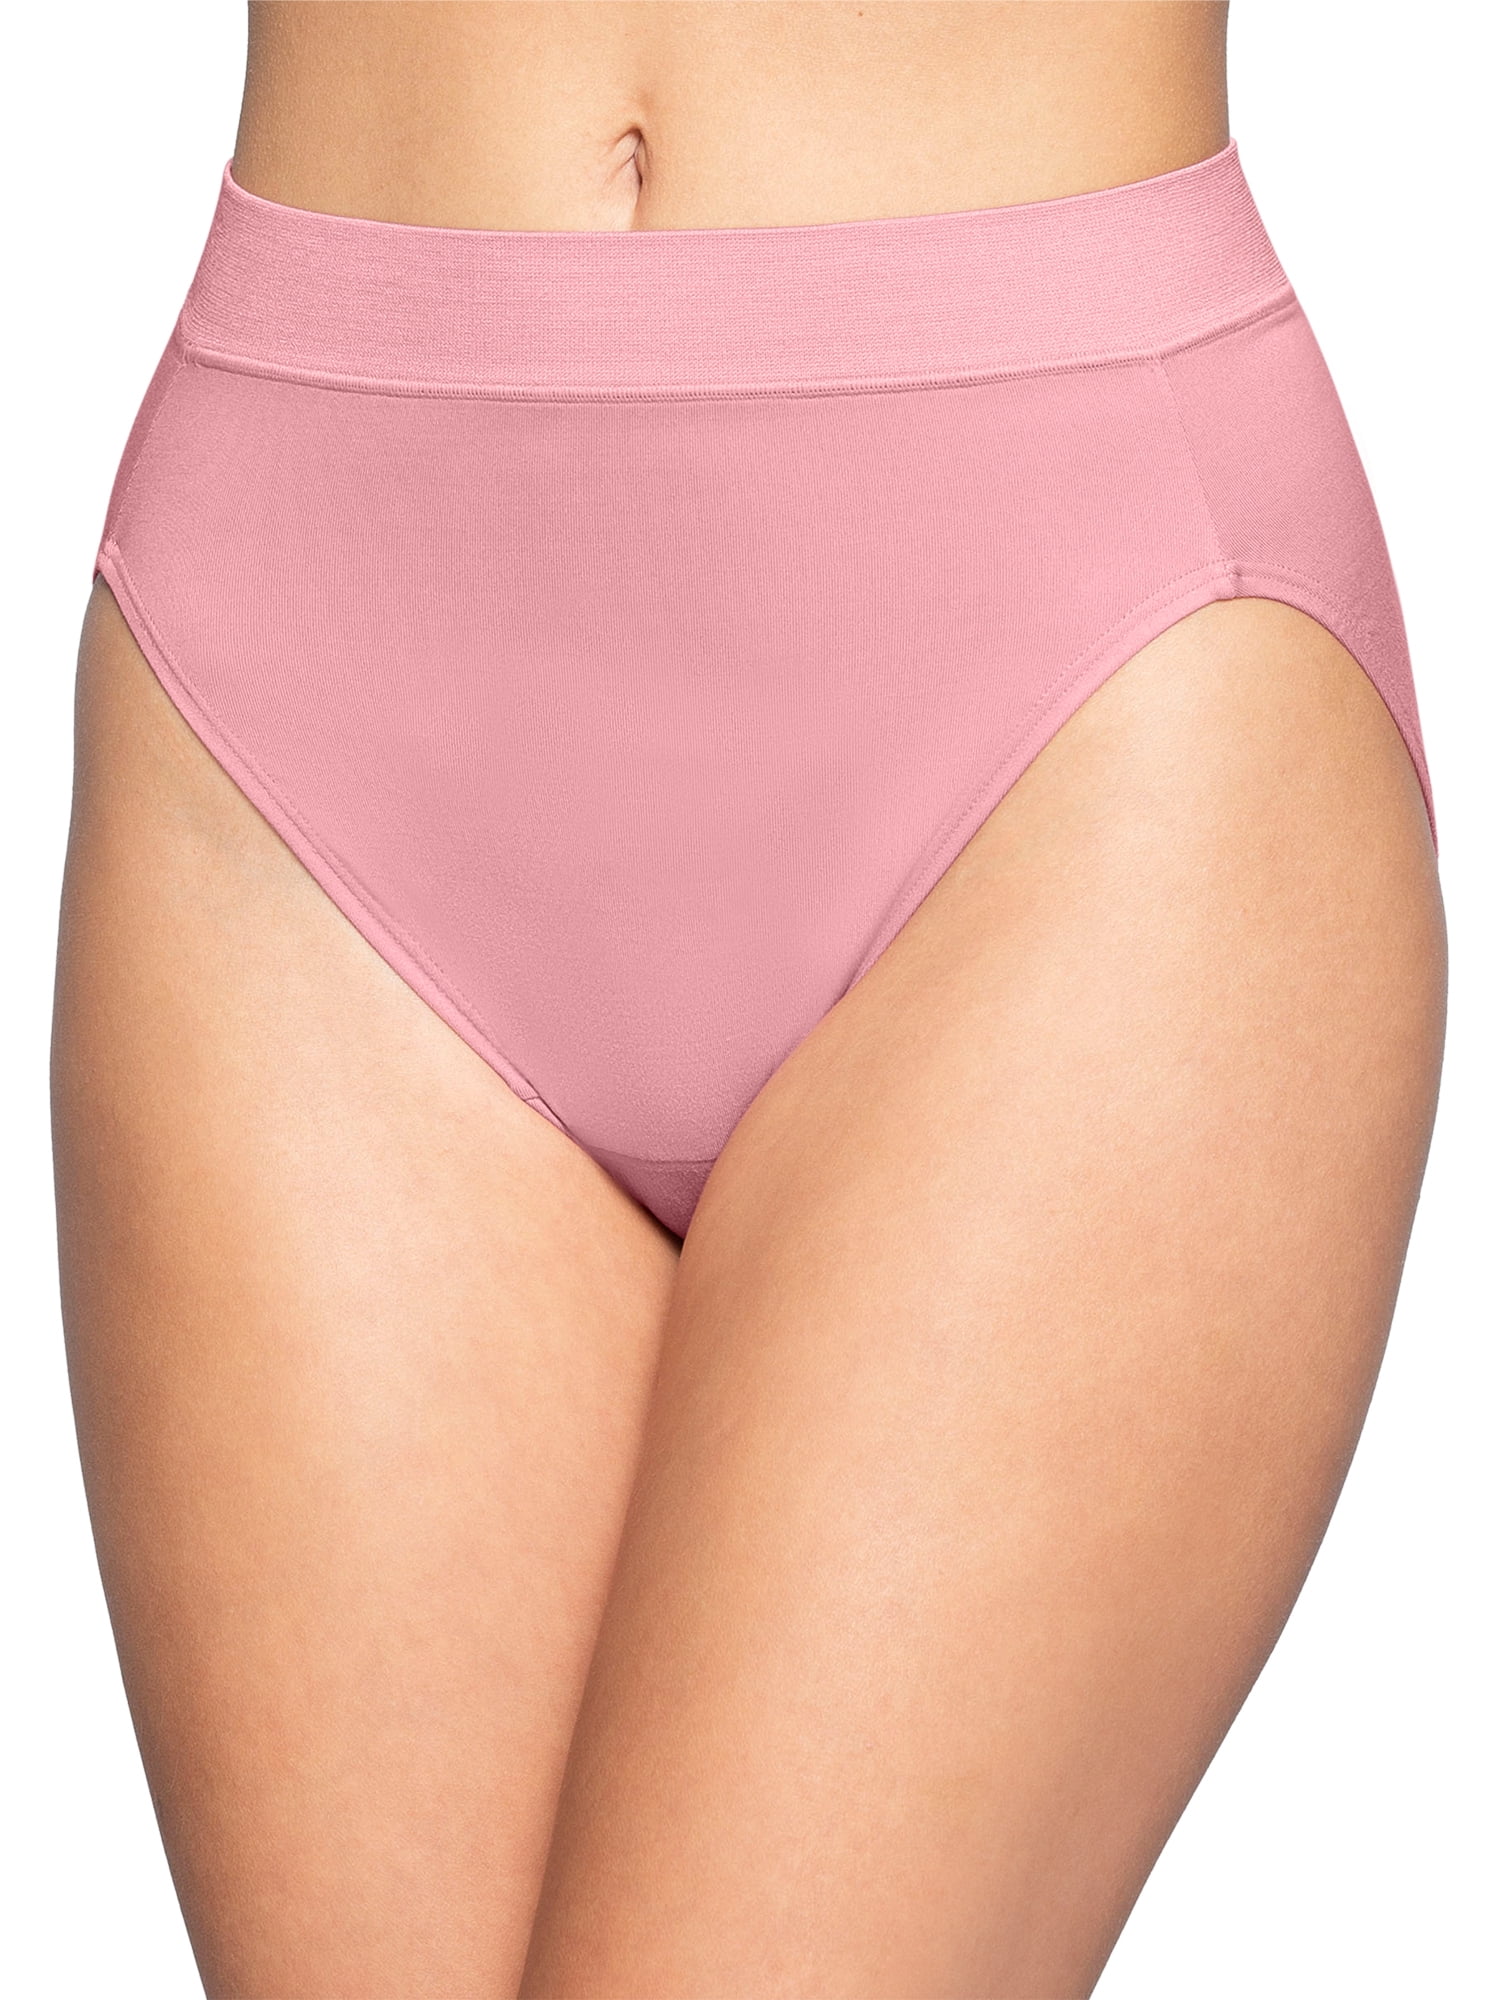 Vanity Fair Pink Hi Cut Panties Size 7 Large Underwear Comfort Panty -  Helia Beer Co